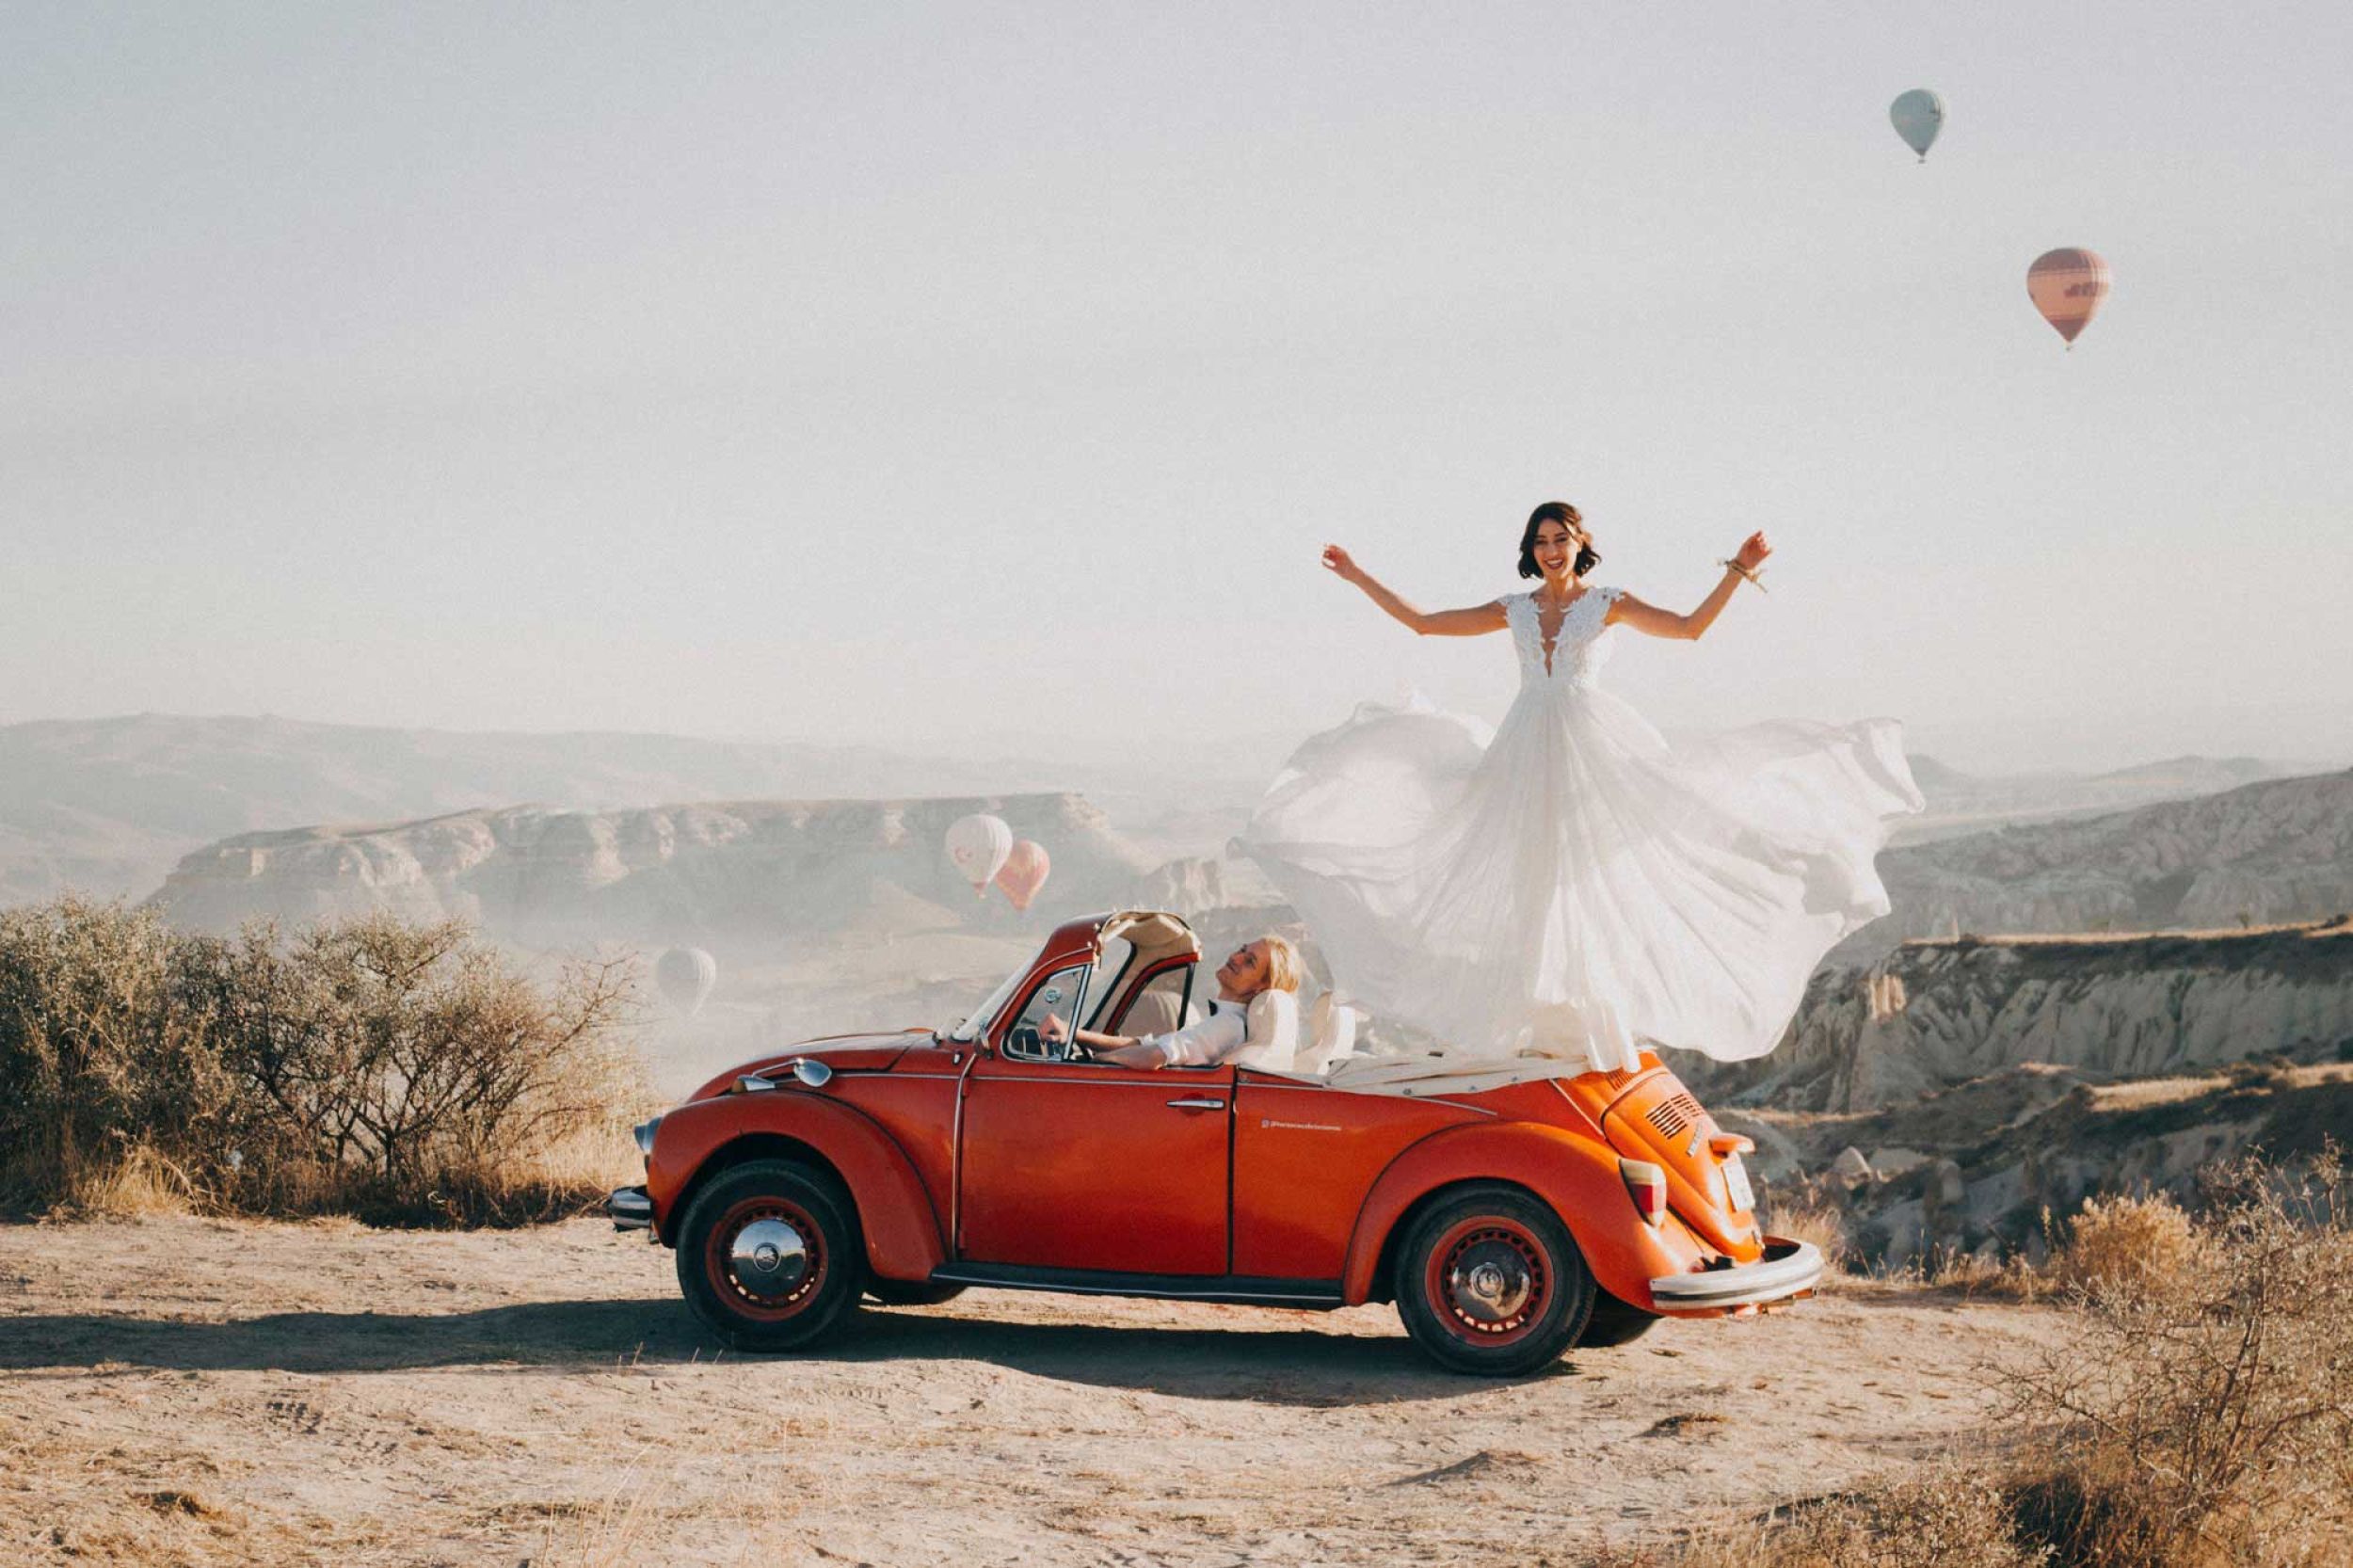 Trouwfotograaf: de must voor elke trouwdag